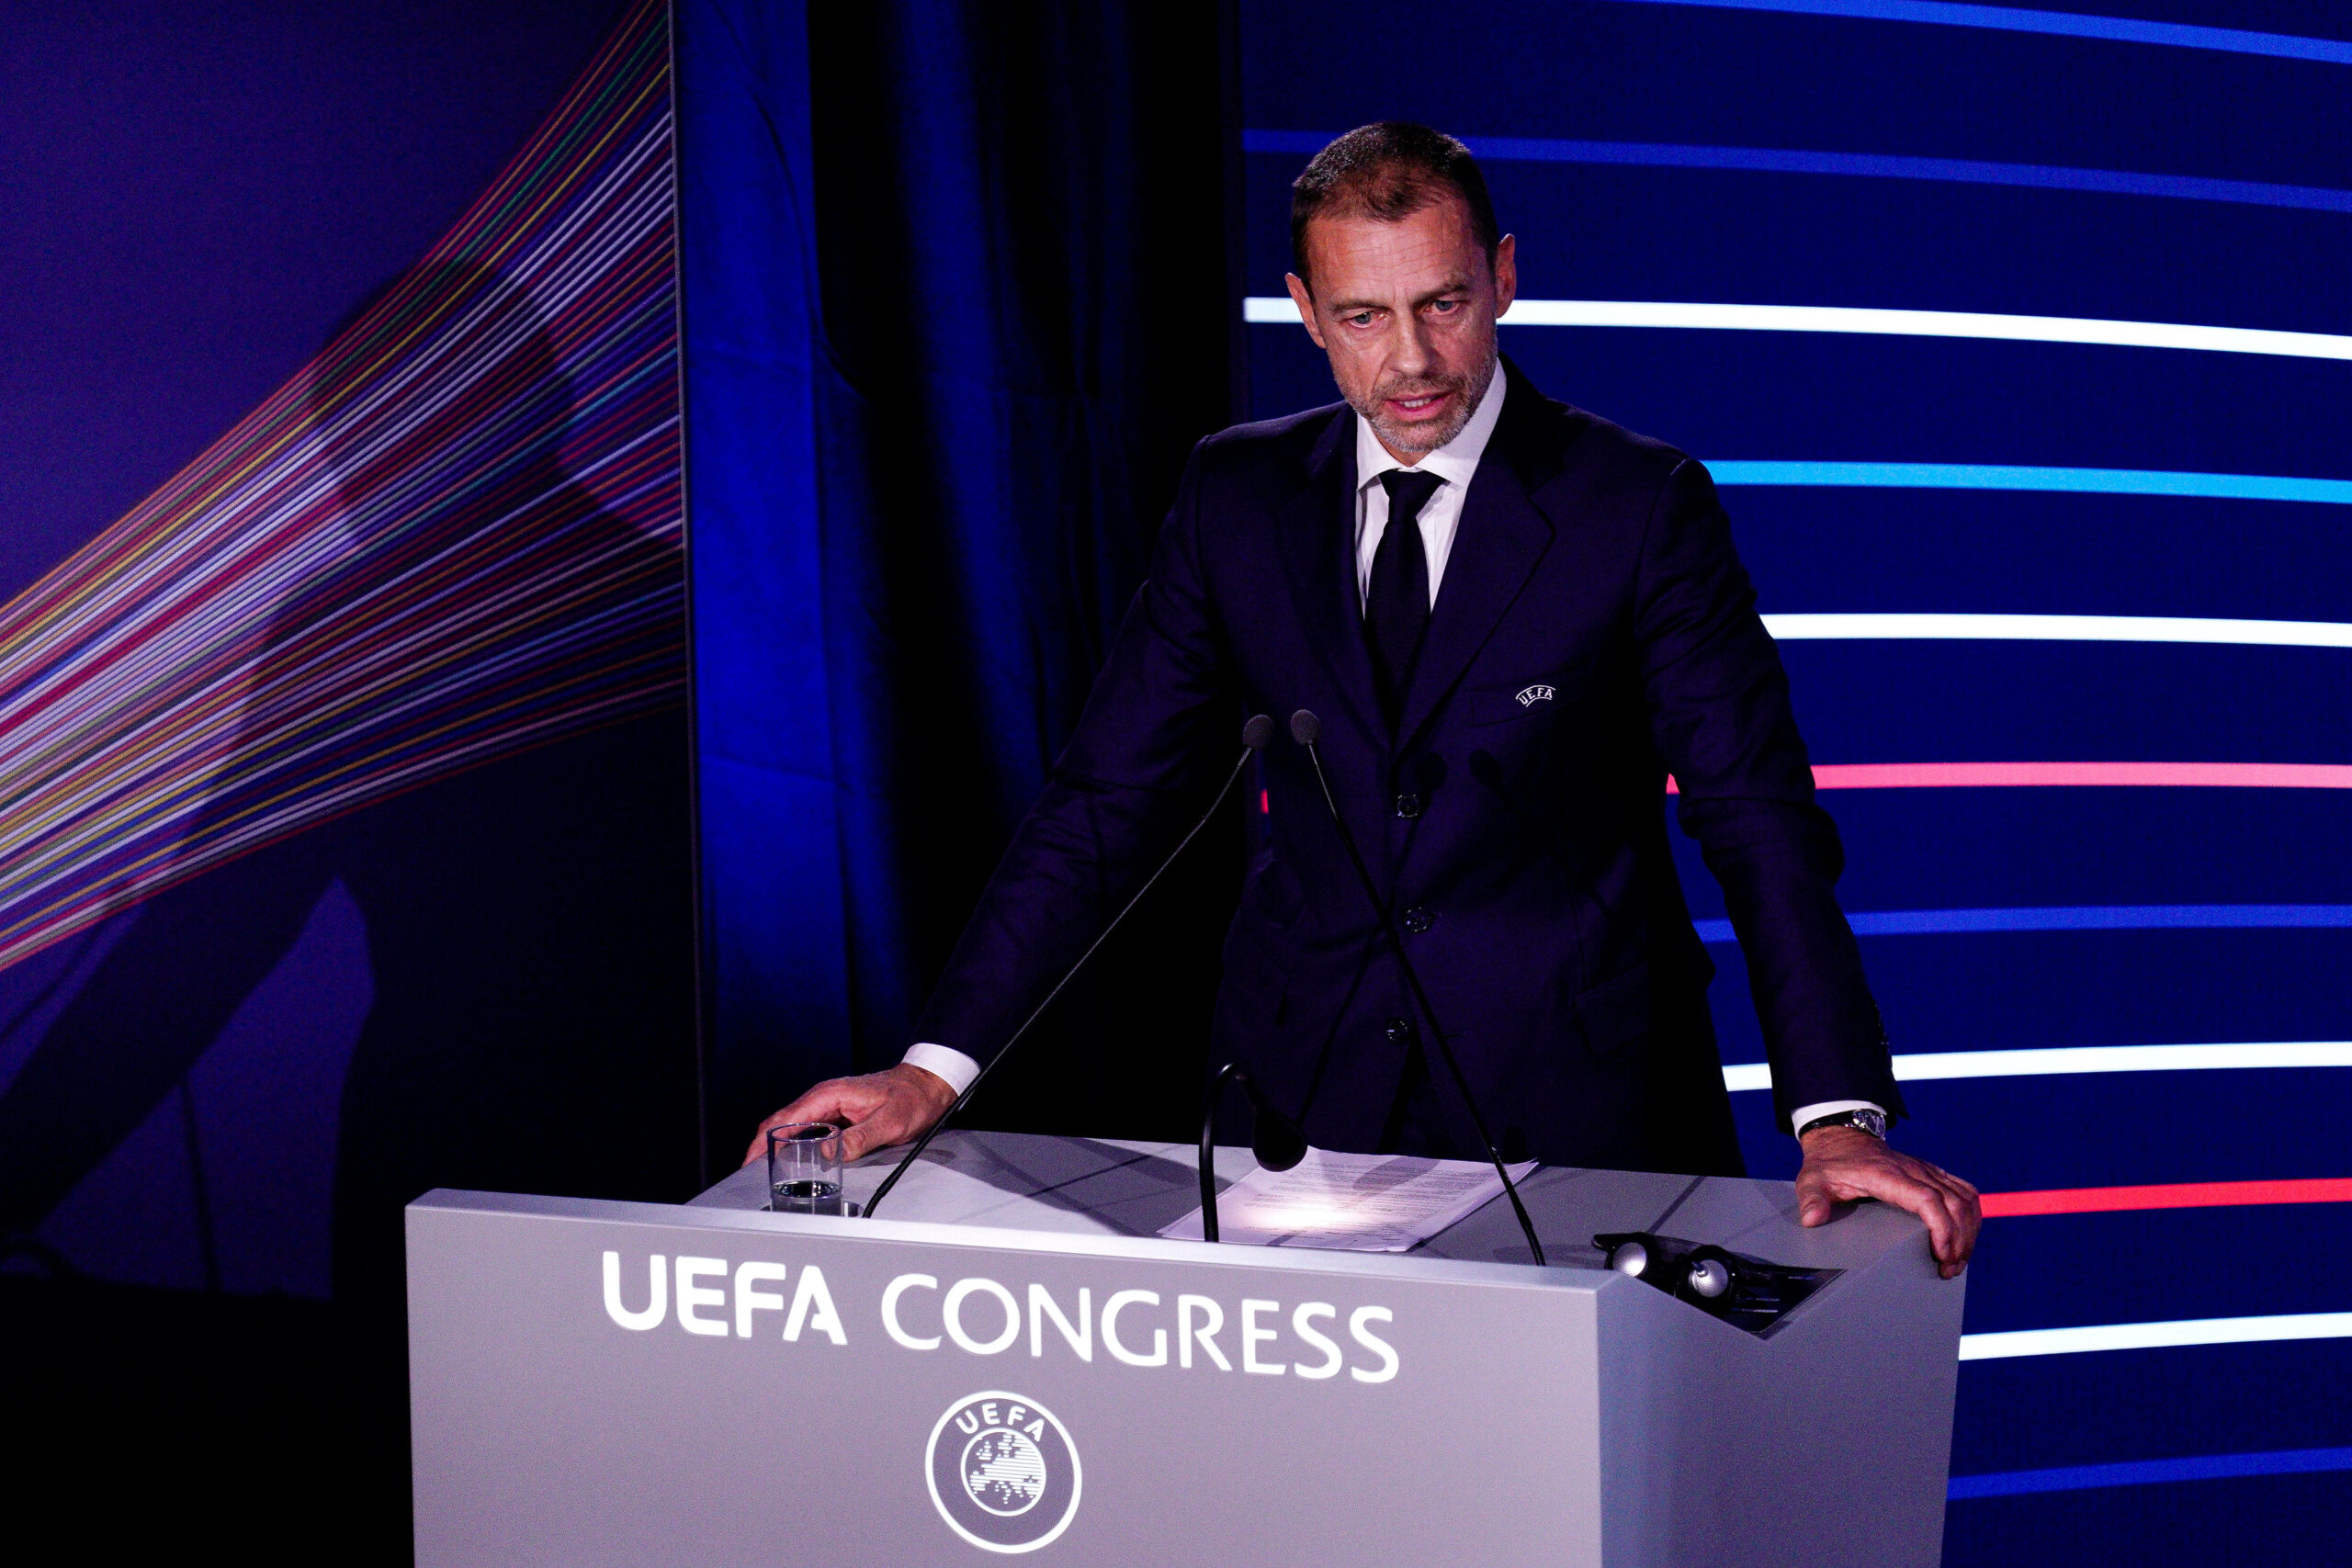 Aleksandere Ceferin steht auf der Bühne am Rednerpult des UEFA-Kongresses.